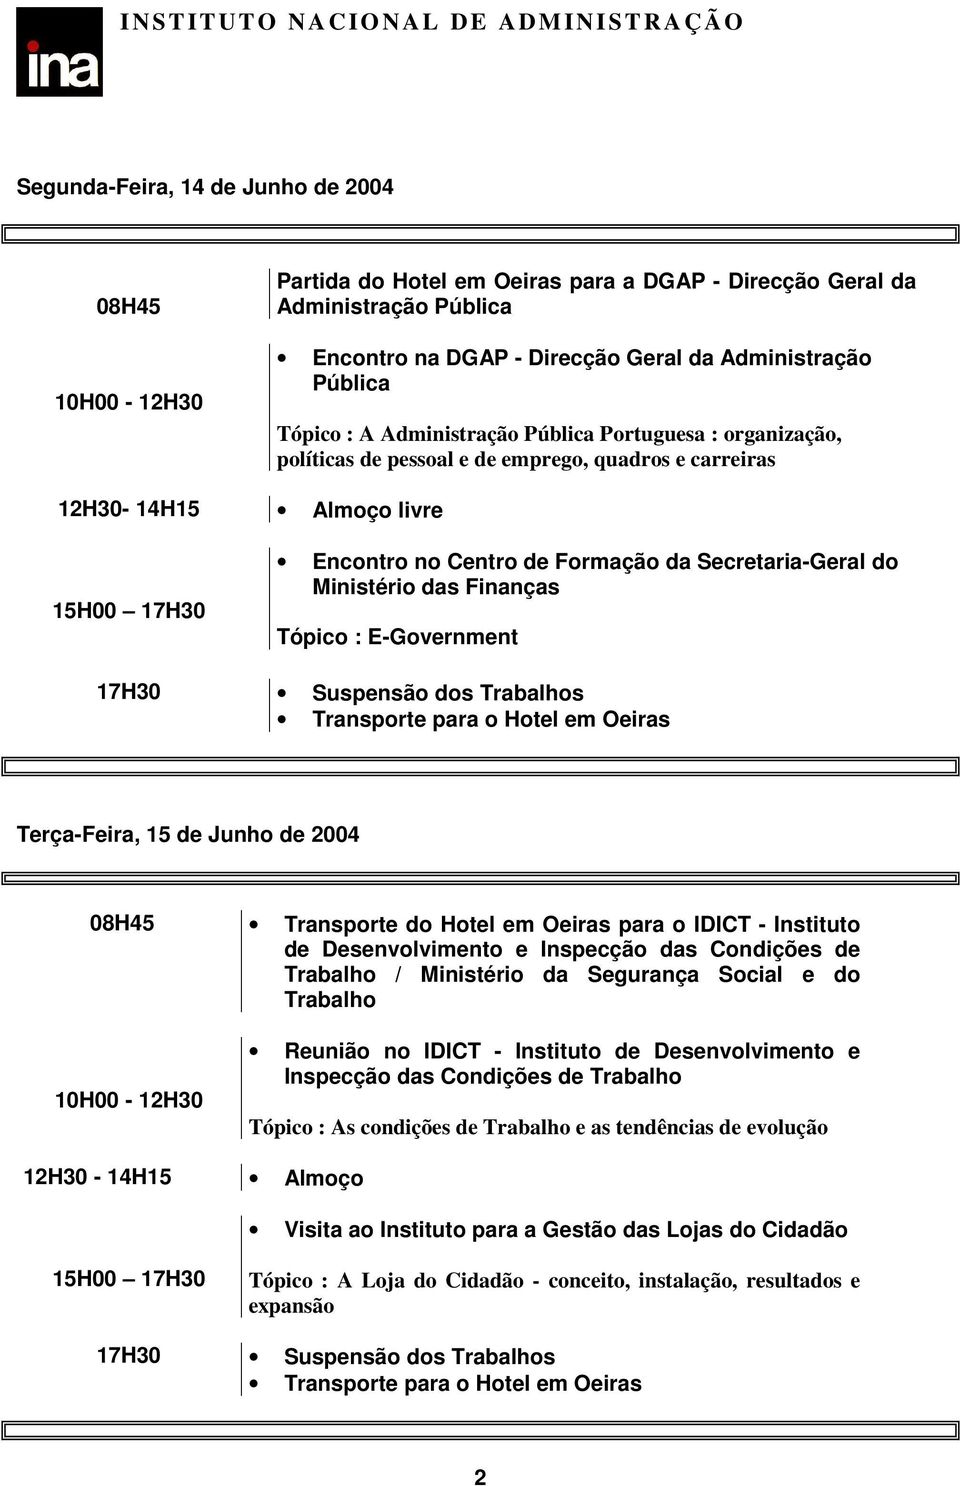 Ministério das Finanças Tópico : E-Government 17H30 Suspensão dos Trabalhos Terça-Feira, 15 de Junho de 2004 08H45 Transporte do Hotel em Oeiras para o IDICT - Instituto de Desenvolvimento e